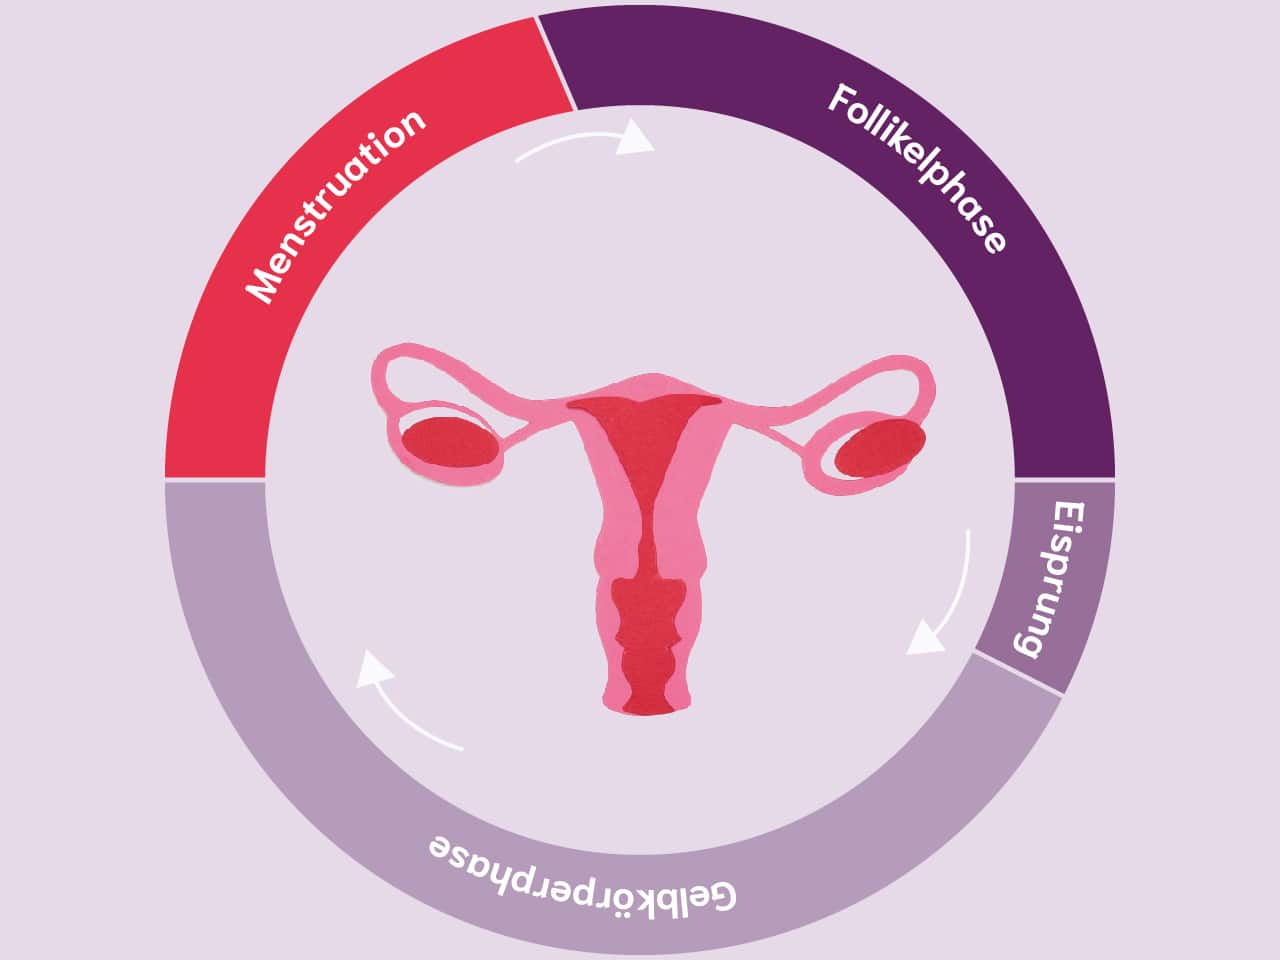 Die Phasen des weiblichen Zyklus: Menstruation, Follikelphase, Eisprung und Gelbkörperphase